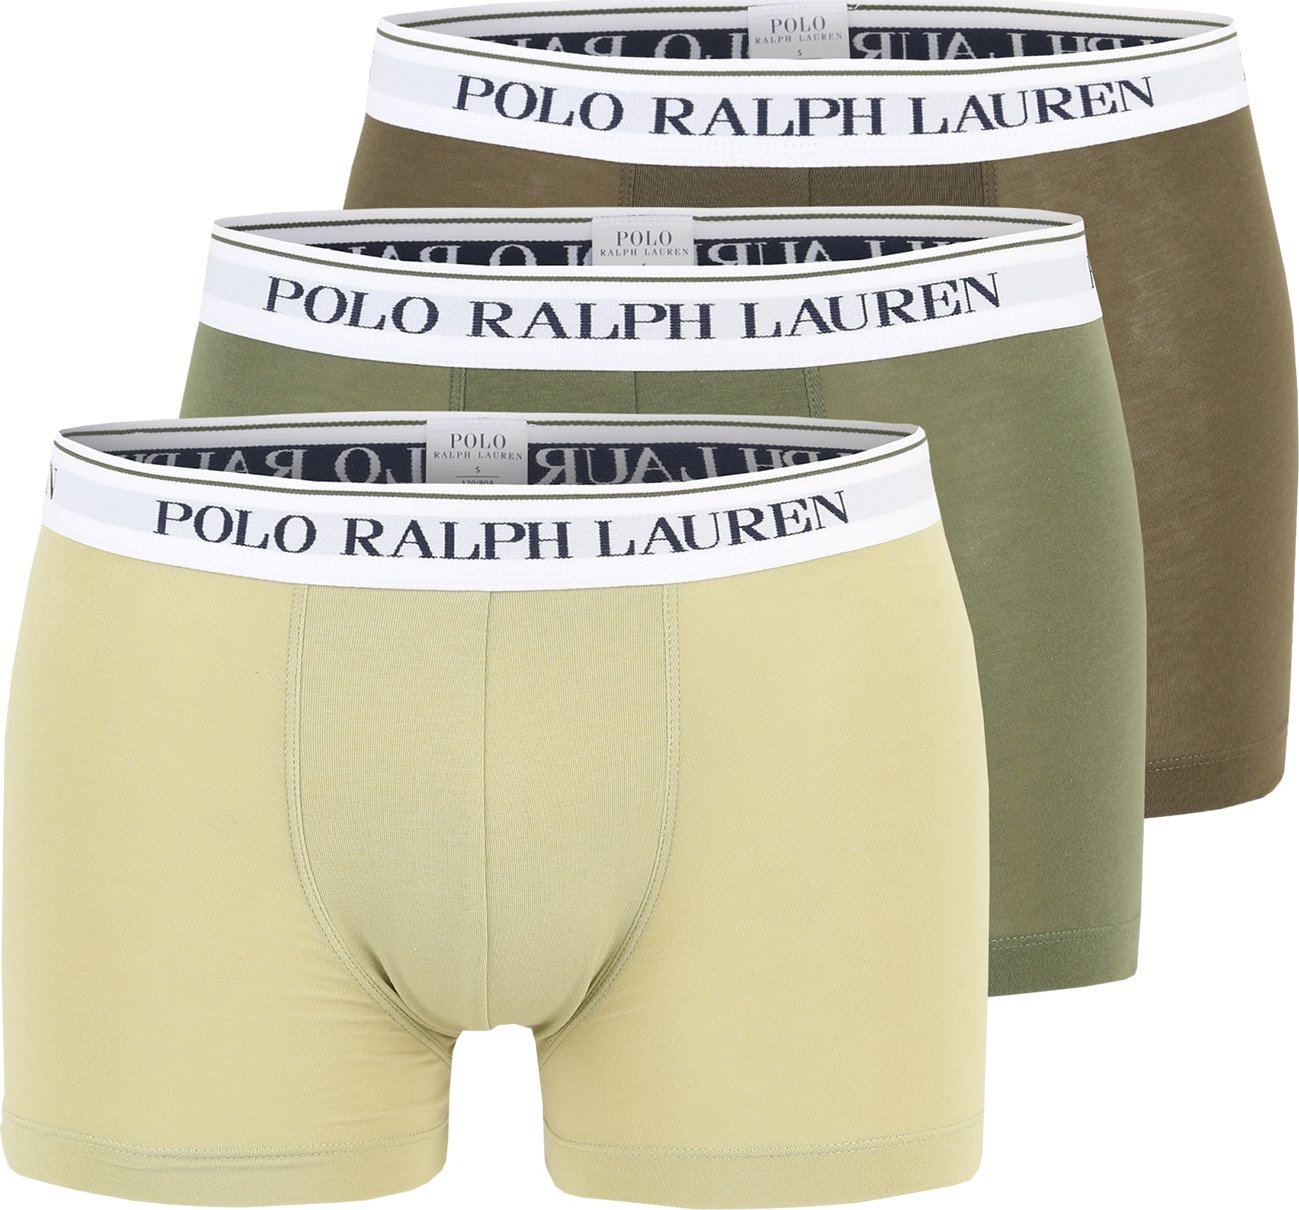 Polo Ralph Lauren Boxerky pastelově žlutá / khaki / olivová / černá / bílá